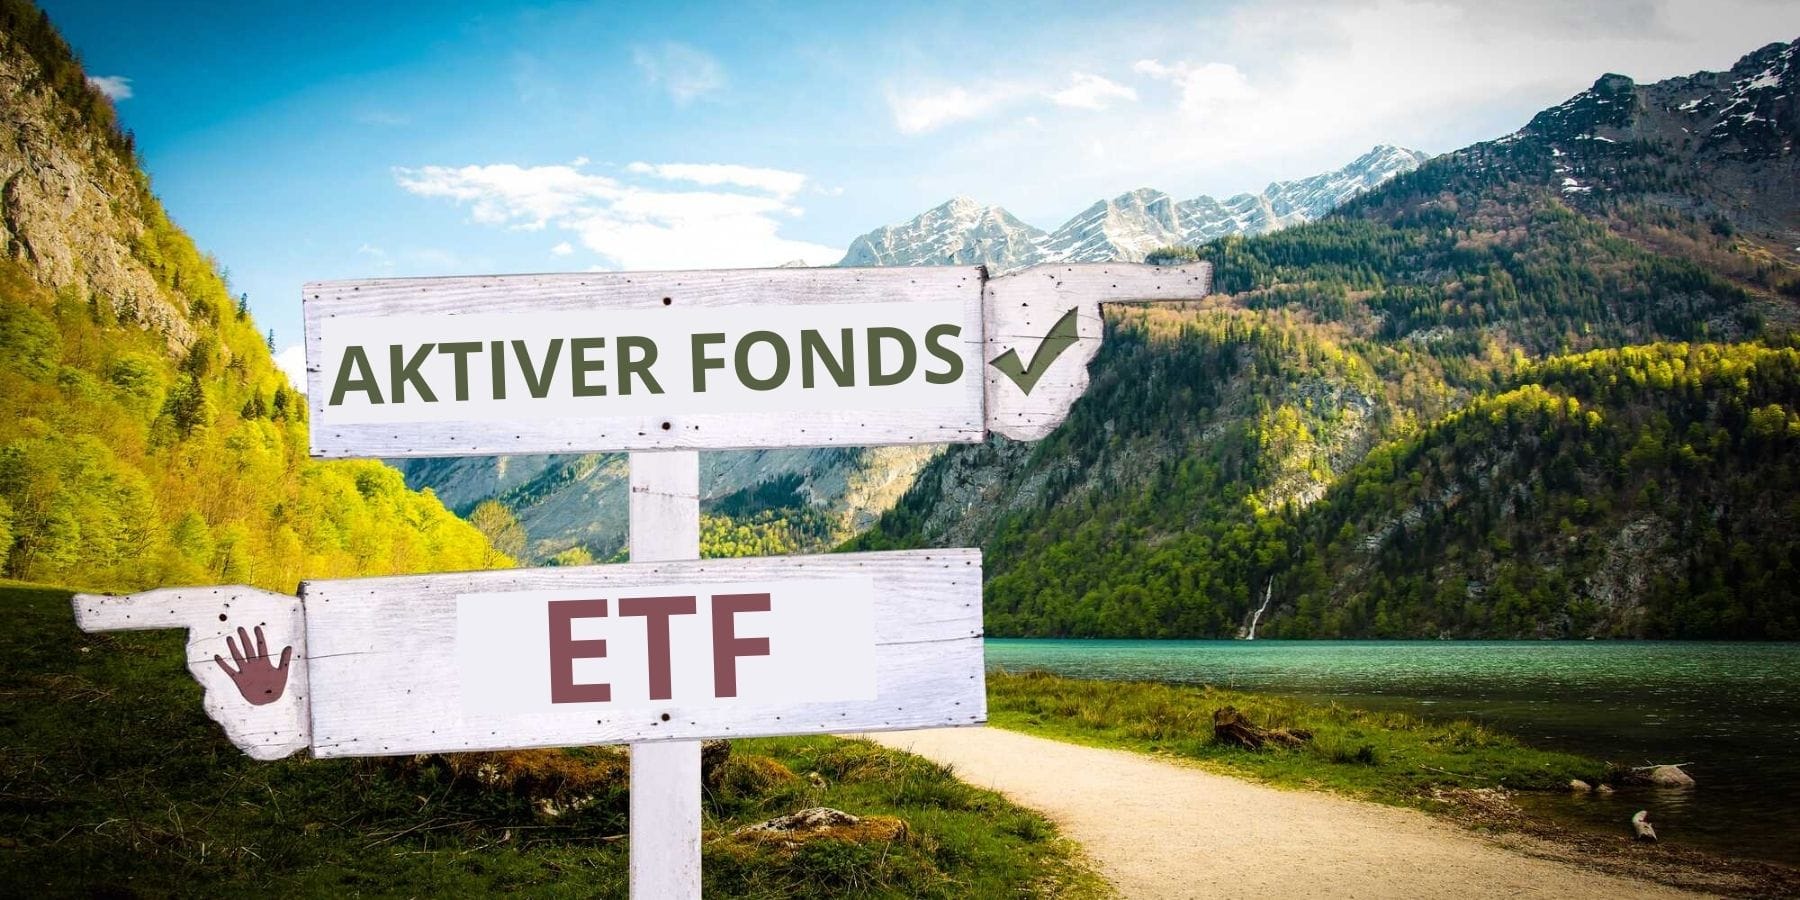 Aktiver Fonds vs. ETF Vergleich - Wegweiser links rechts mit Gebirge im Hintergrund